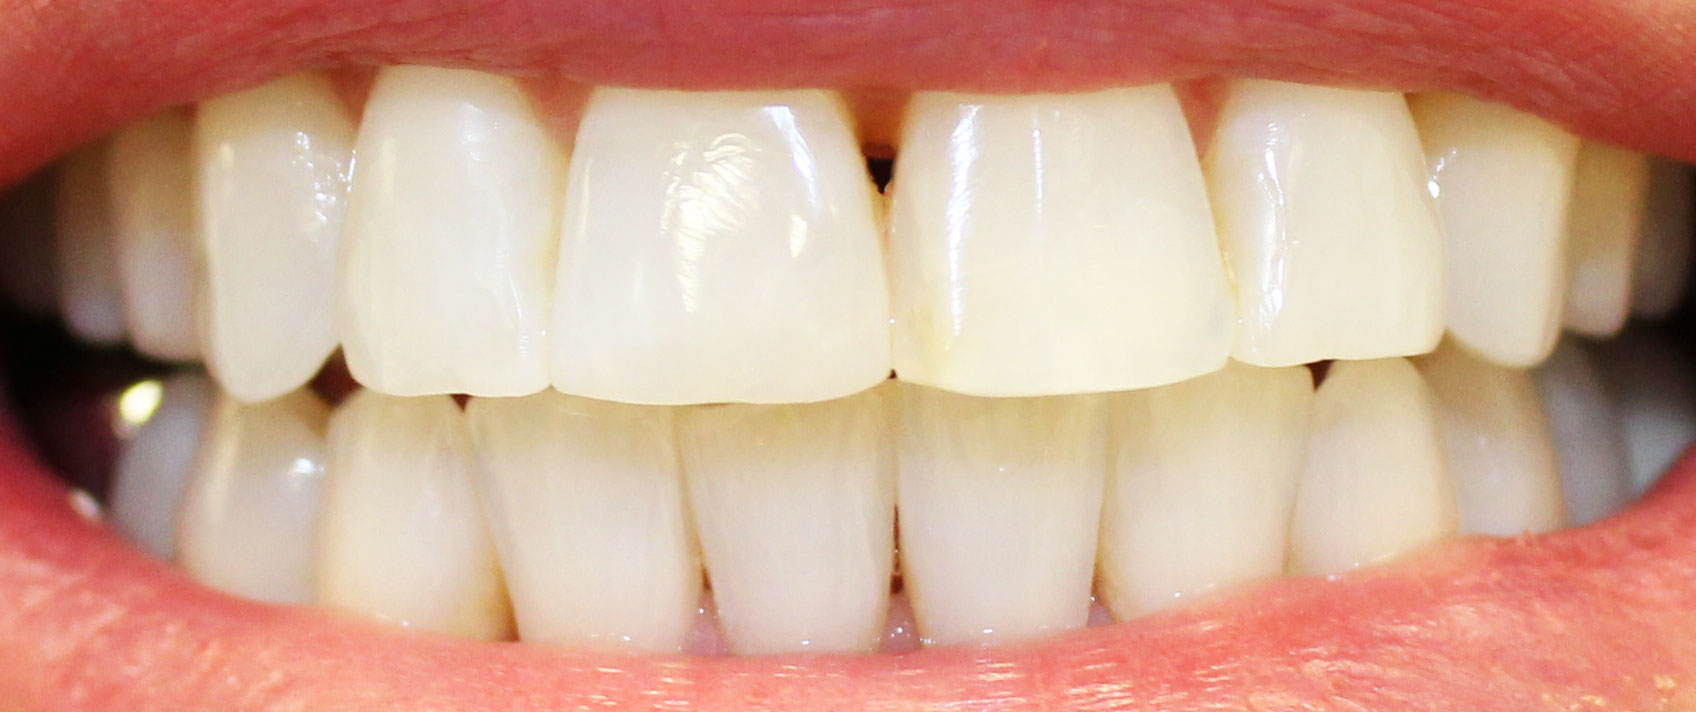 Smile after dental treatment